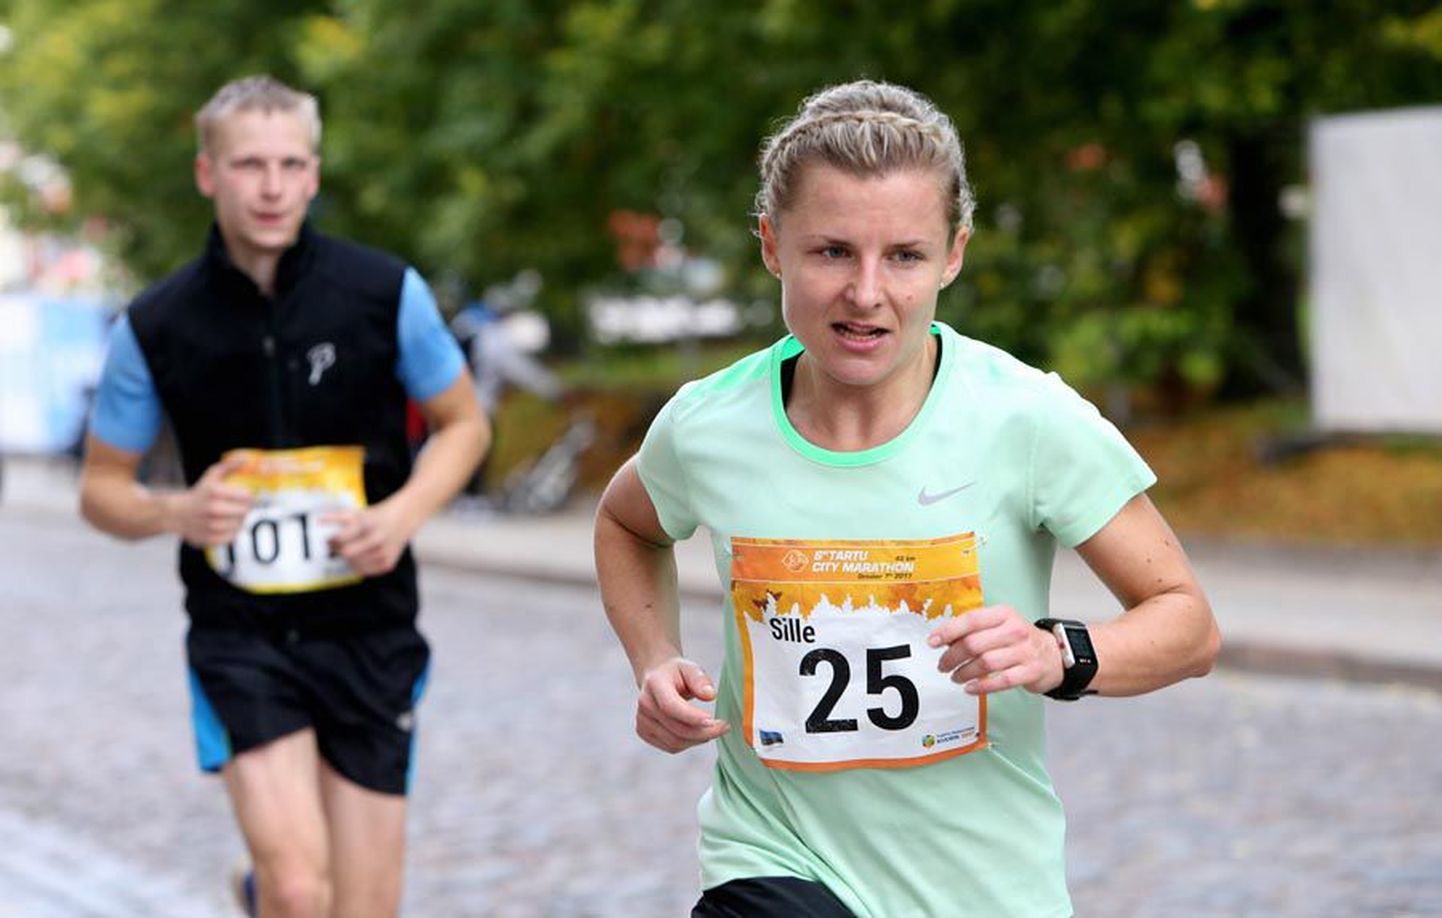 Laupäeval asetleidnud Tartu linnamaratoni läbis Sille Puhu ajaga 3:10 ja oli sellega naiste konkurentsis neljas. Tulemus tagas talle maratonidesarja üldvõidu.